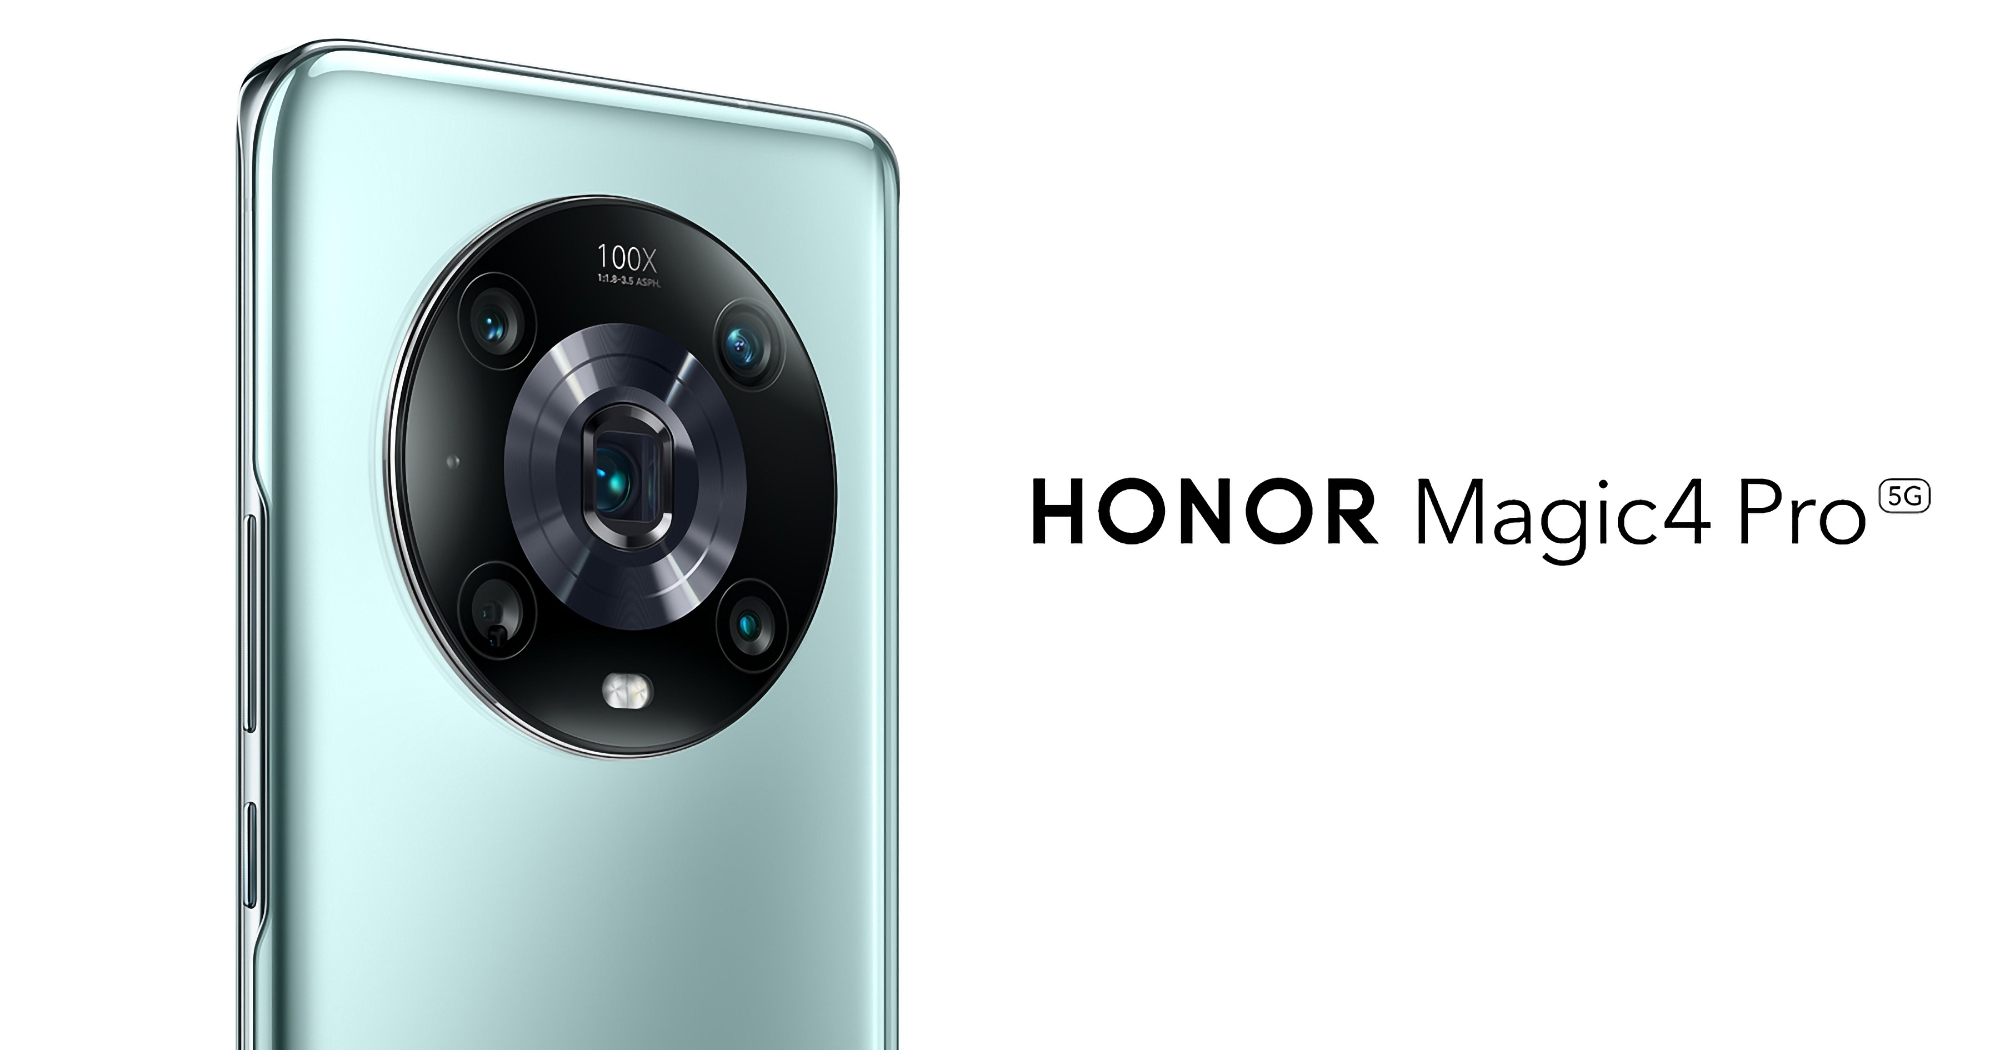 Le Honor Magic 4 Pro a reçu une nouvelle version logicielle sur le marché mondial